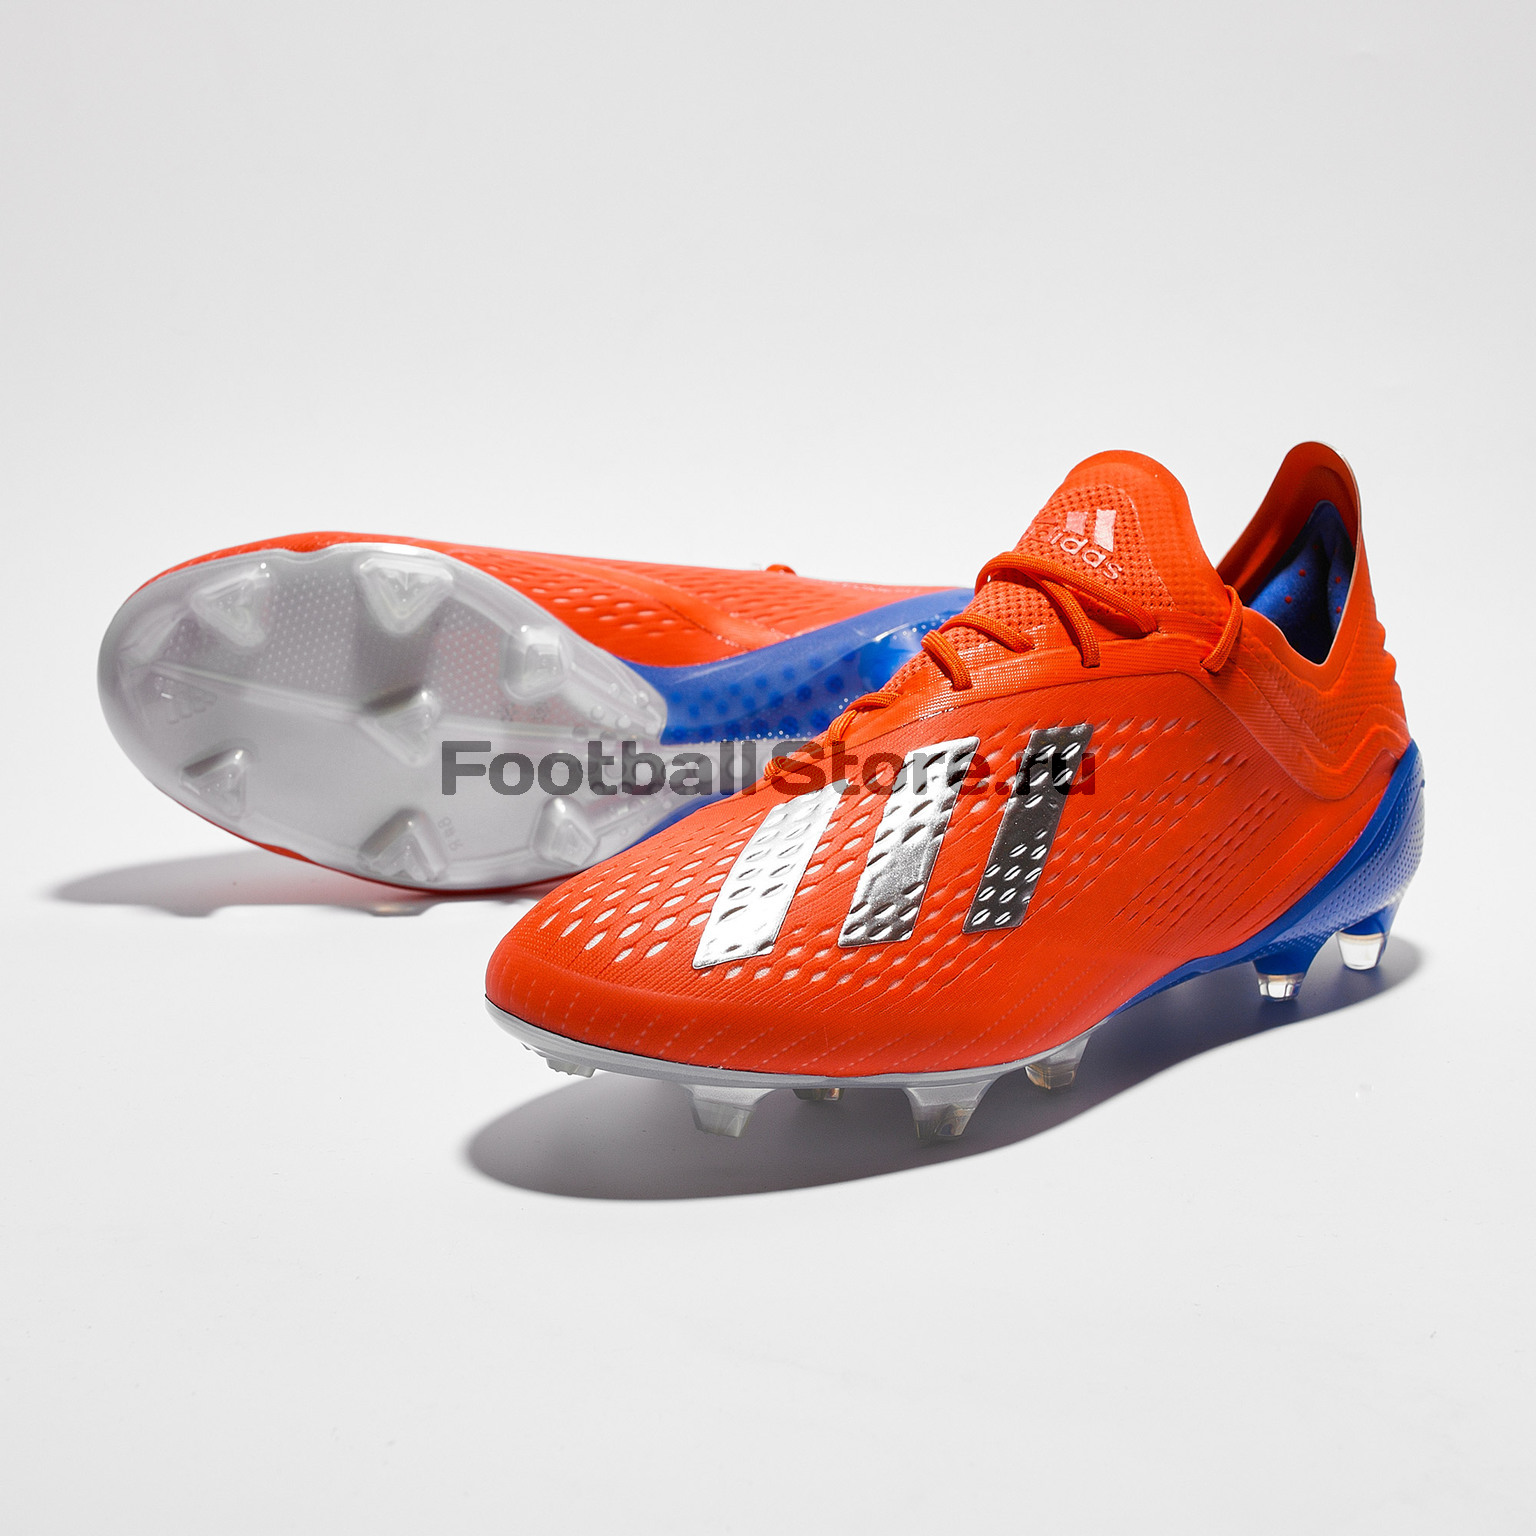 Бутсы Adidas X 18.1 FG BB9347 – купить бутсы в интернет магазине  Footballstore, цена, фото, отзывы